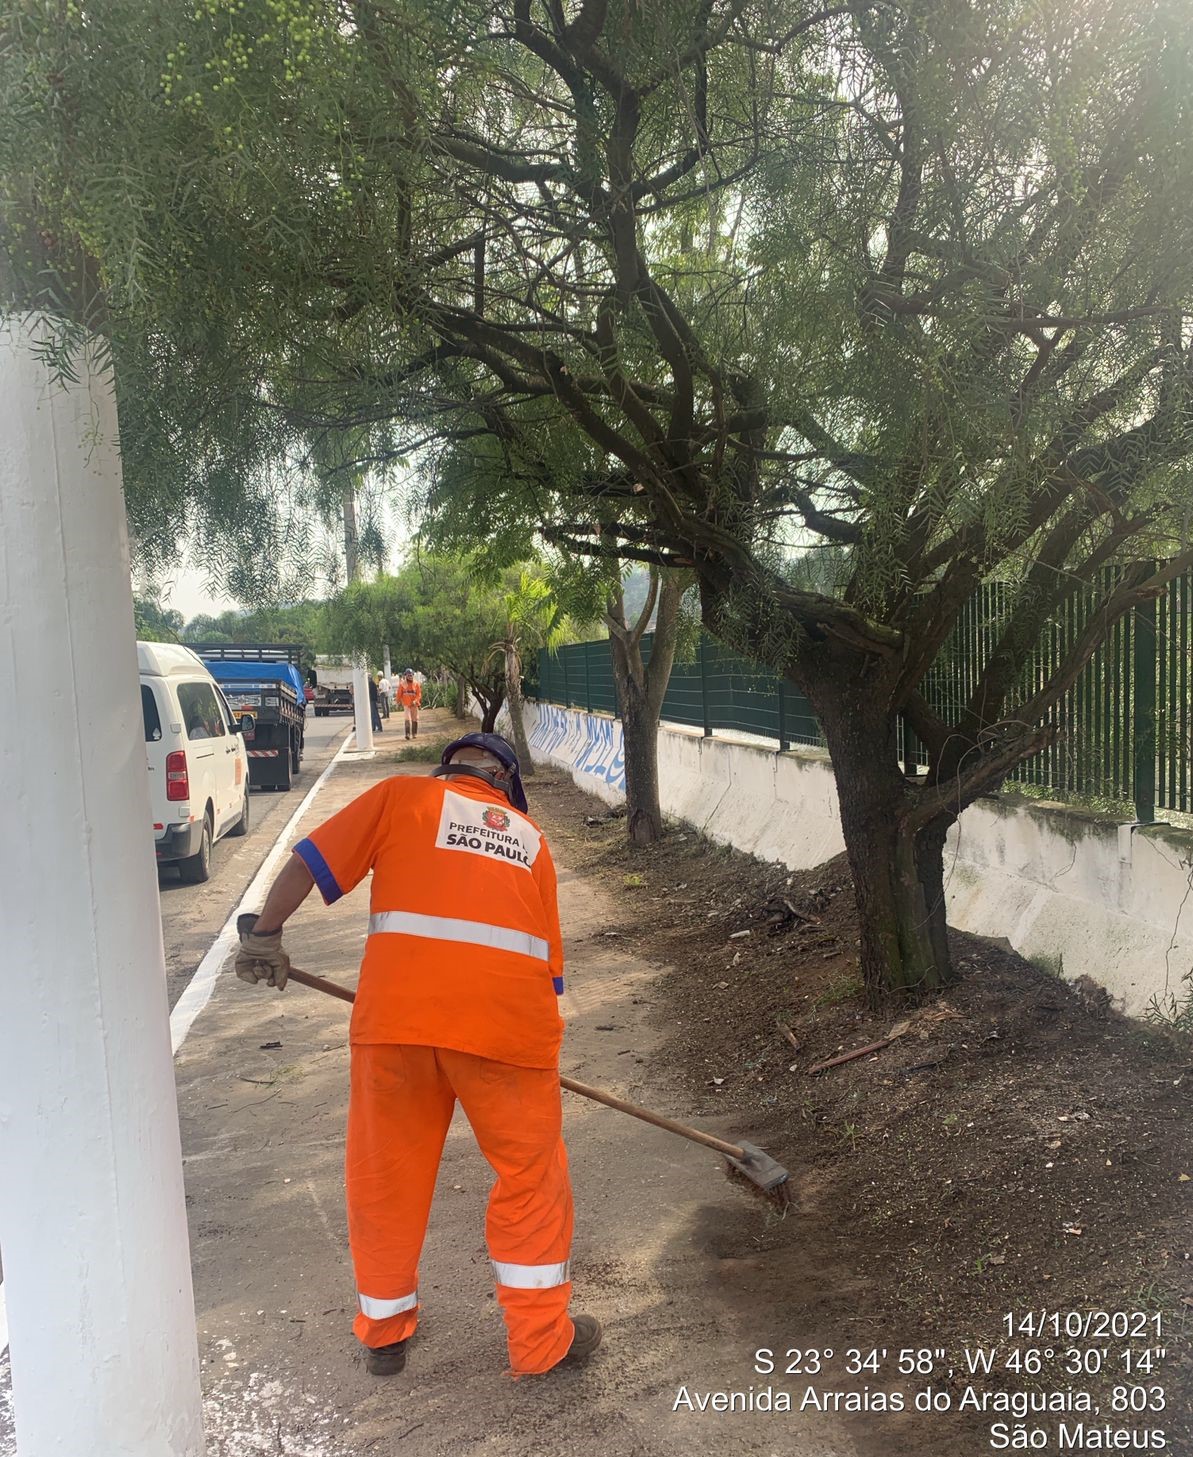 Funcionário da prefeitura, com uniforme laranja, usando ferramenta manual, recolhe detritos em uma calçada, à beira de uma mureta, com grade metálica acima. 